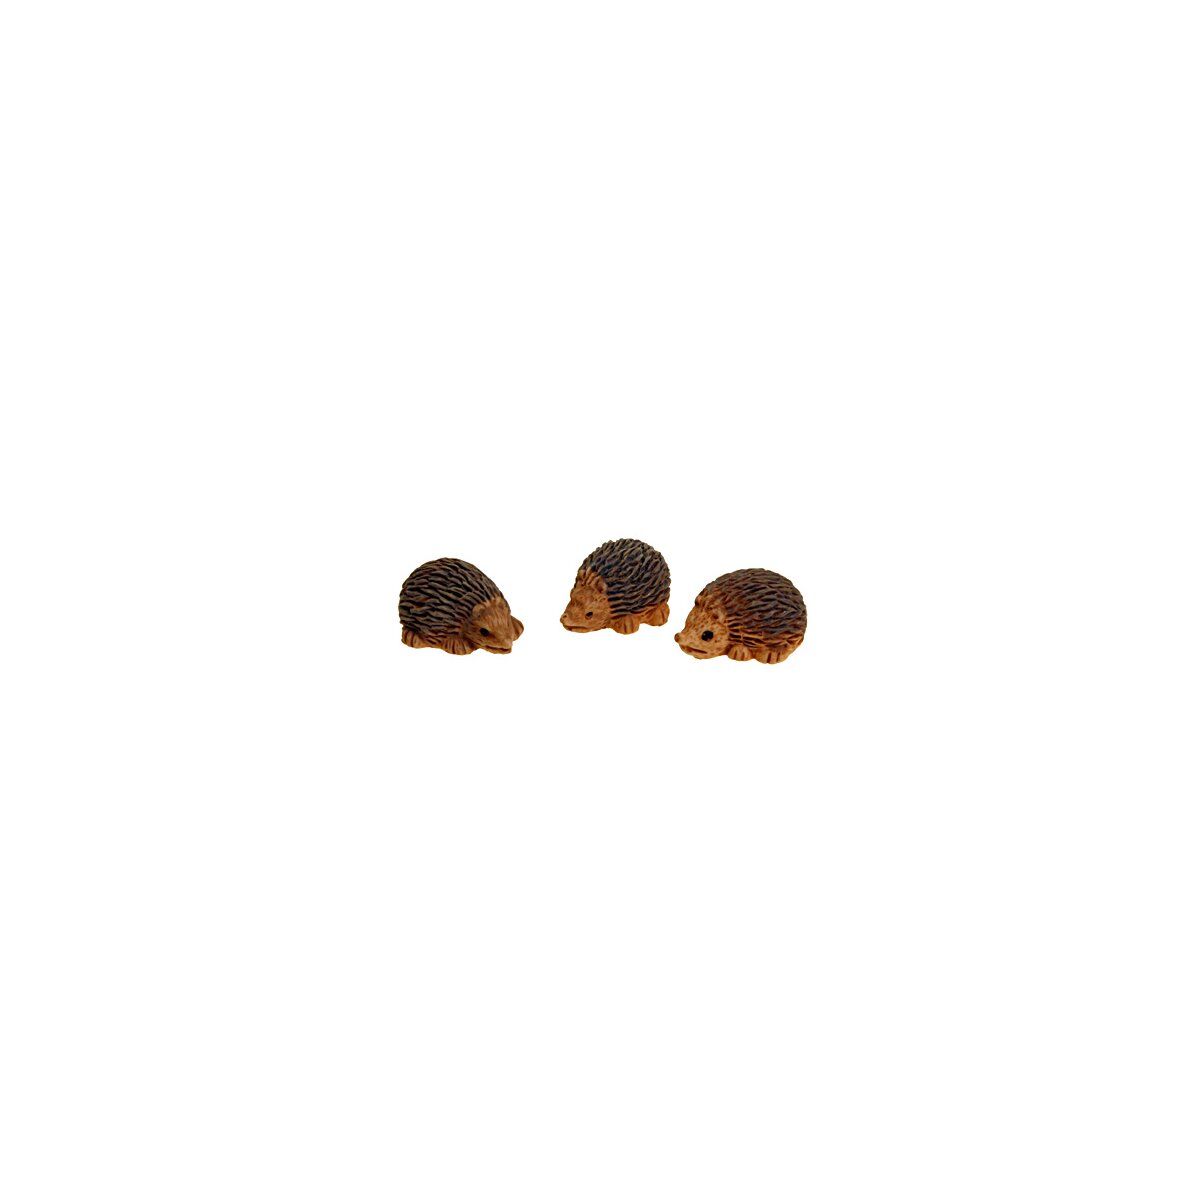 Igel 2 cm 3er-Satz Mini-Igel kleine Igelfiguren aus Polyresin, 2,90 €